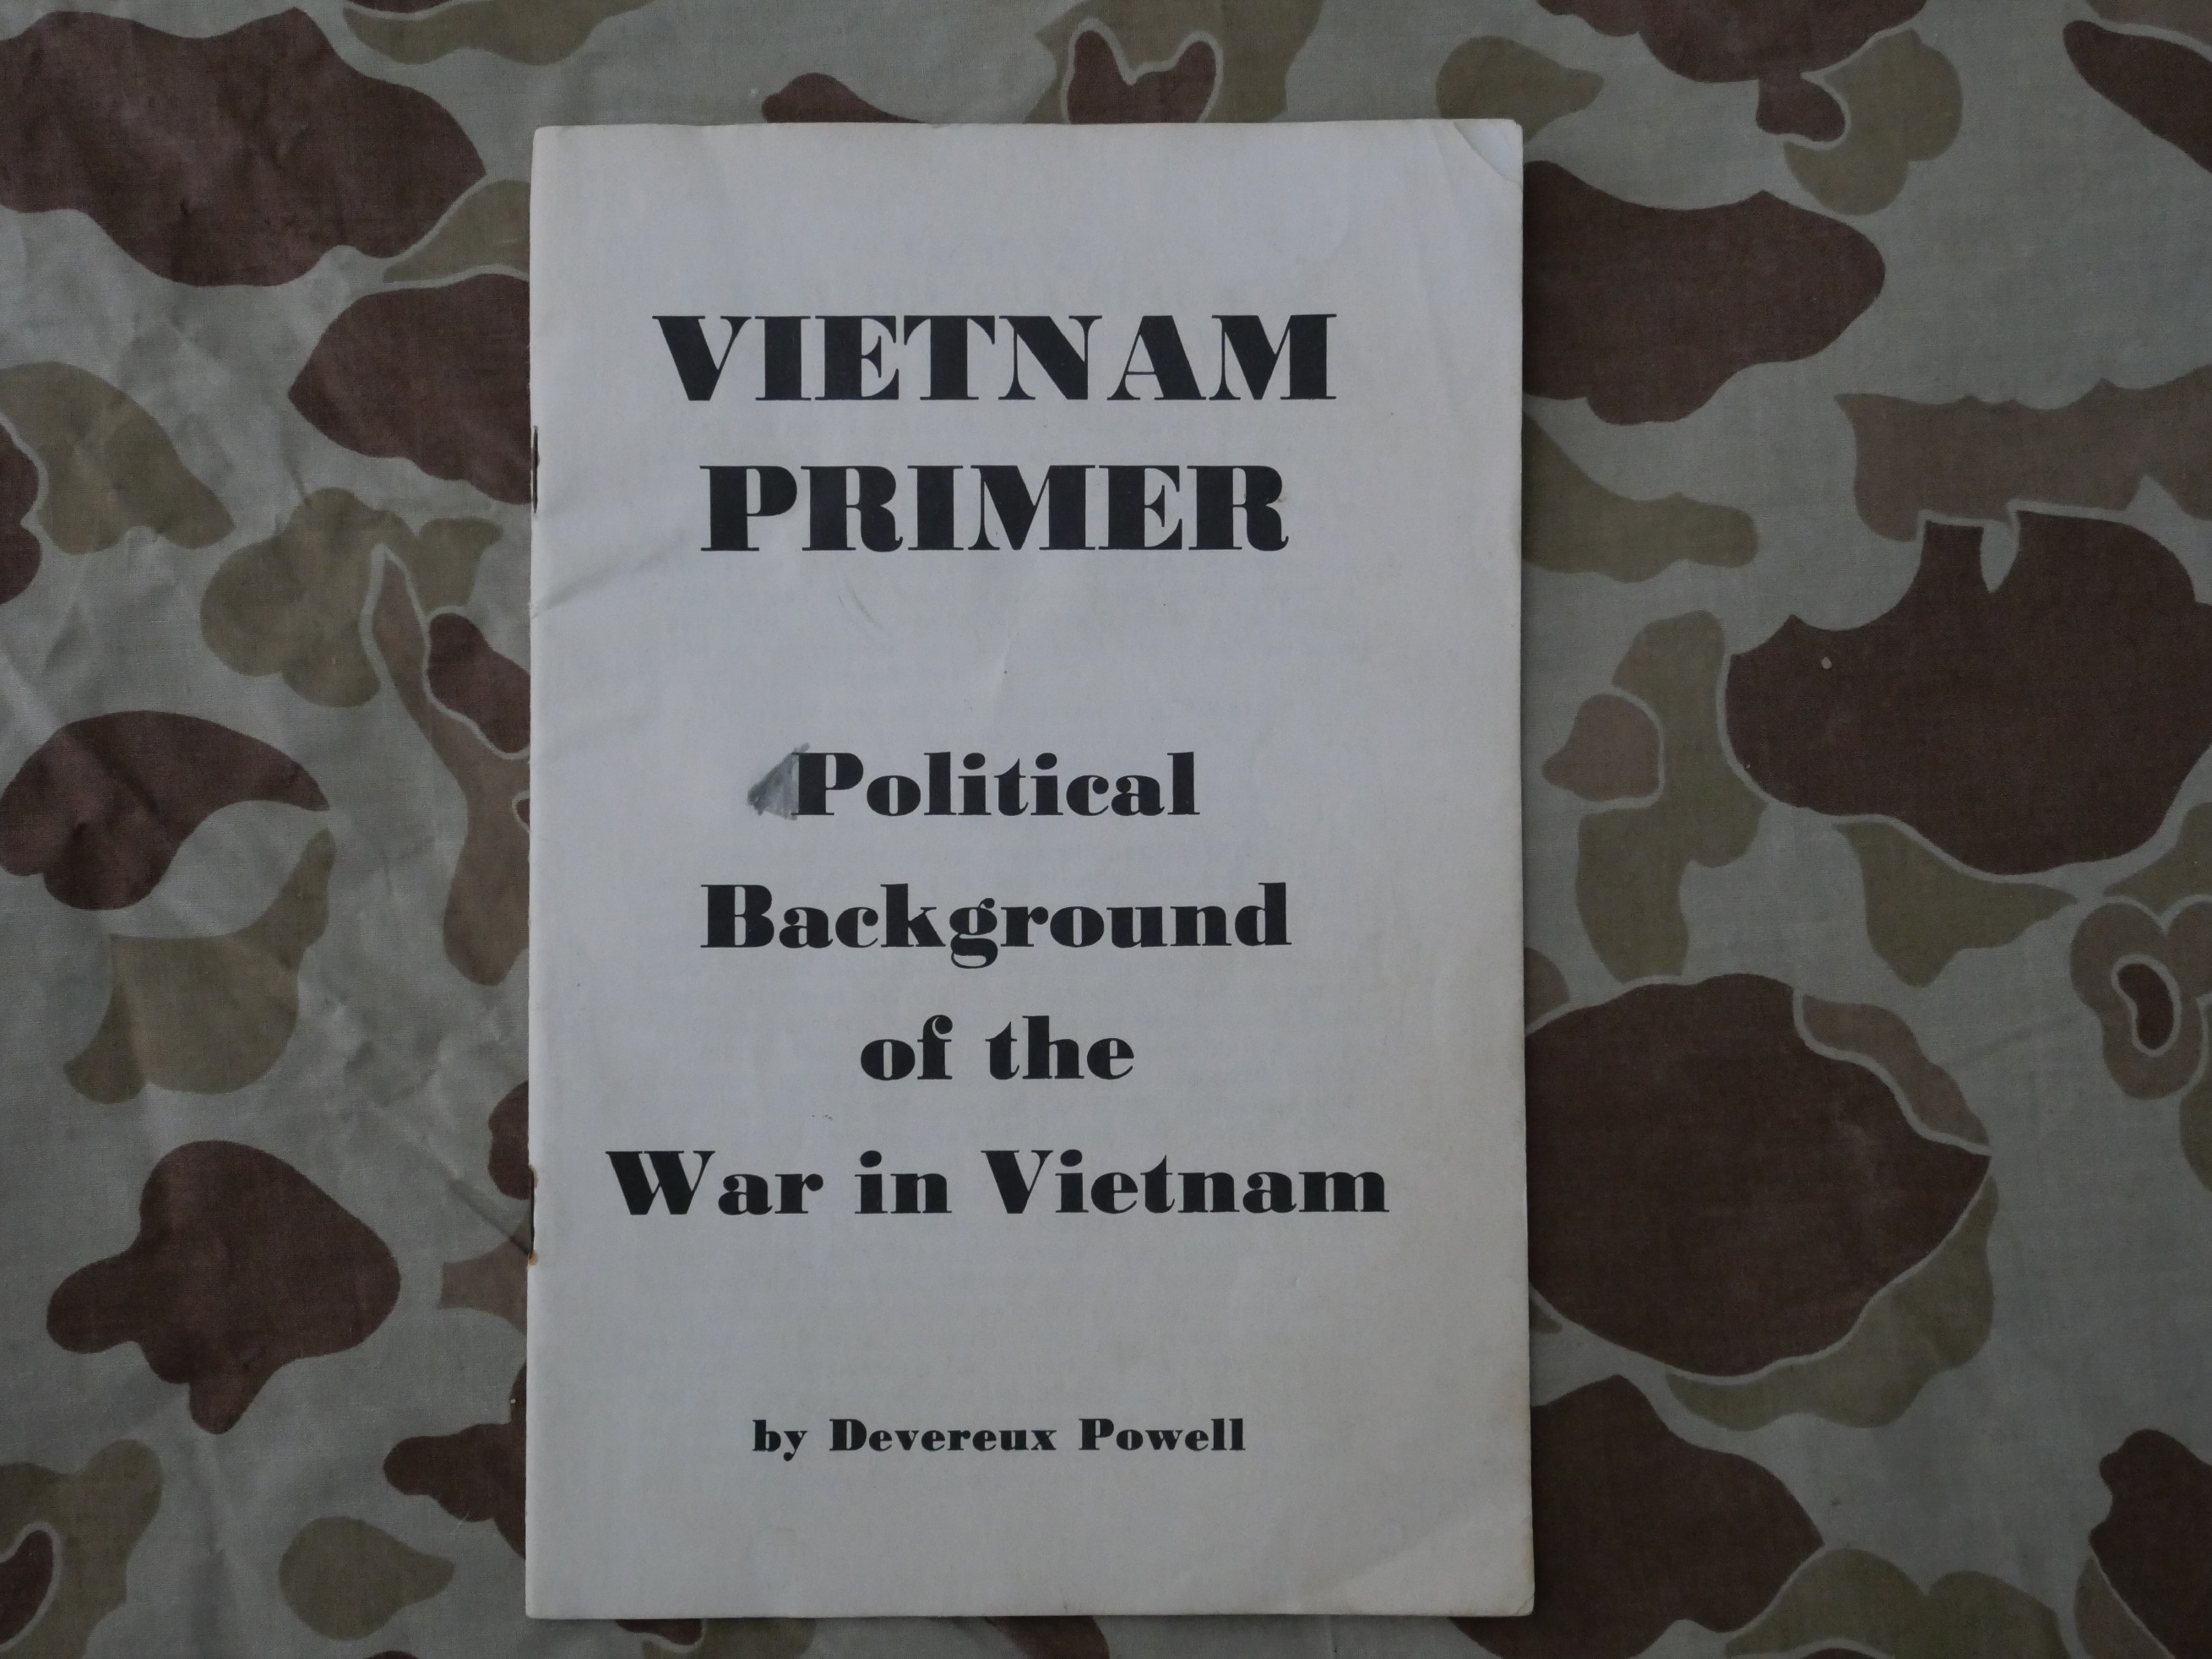 Brožura "Vietnam Primer - Political Background of the War in Vietnam"